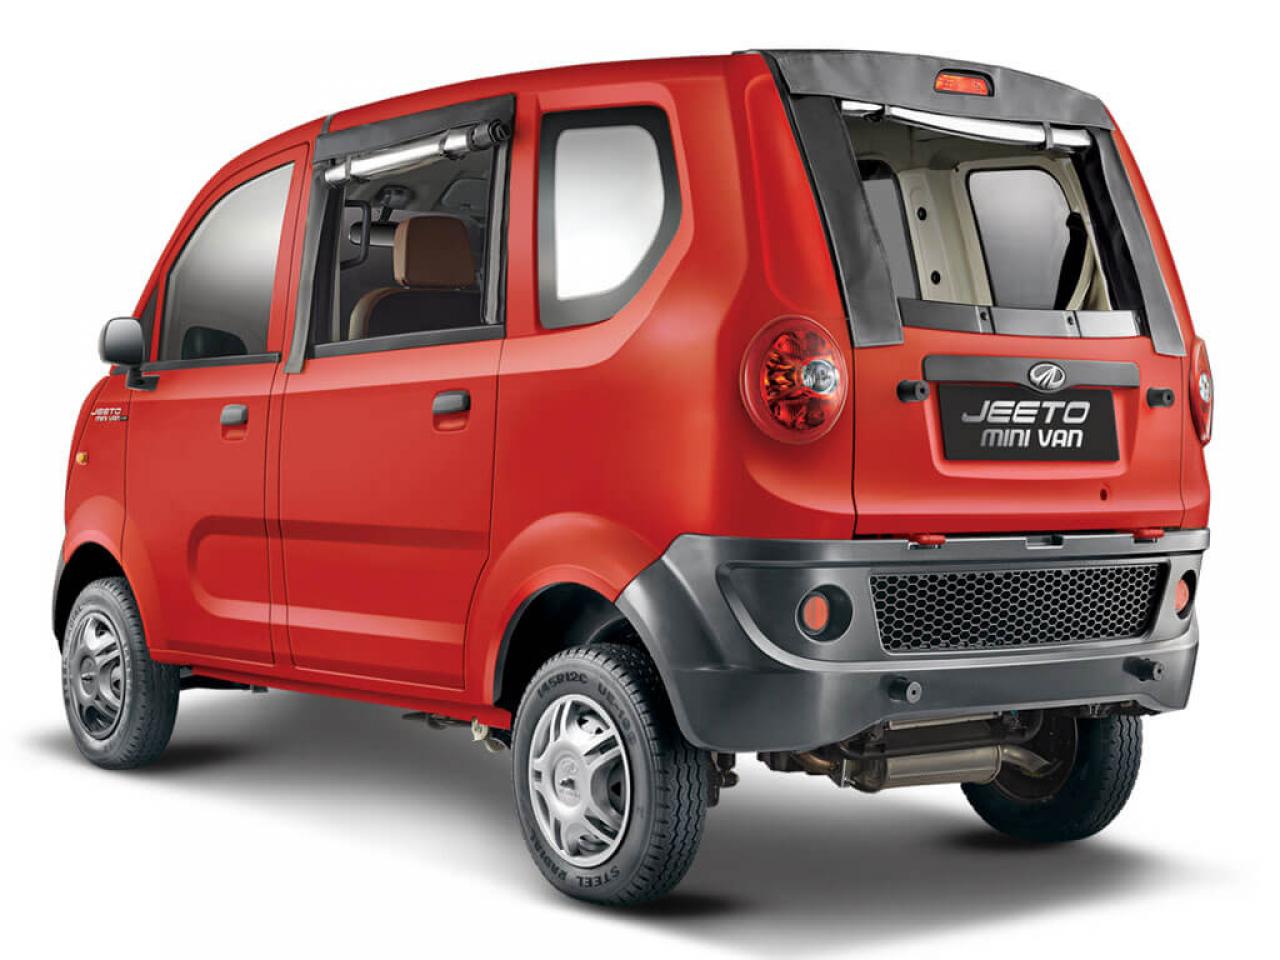 Mahindra Jeeto Minivan Launched At Rs 3 45 Lakh Tata Magic